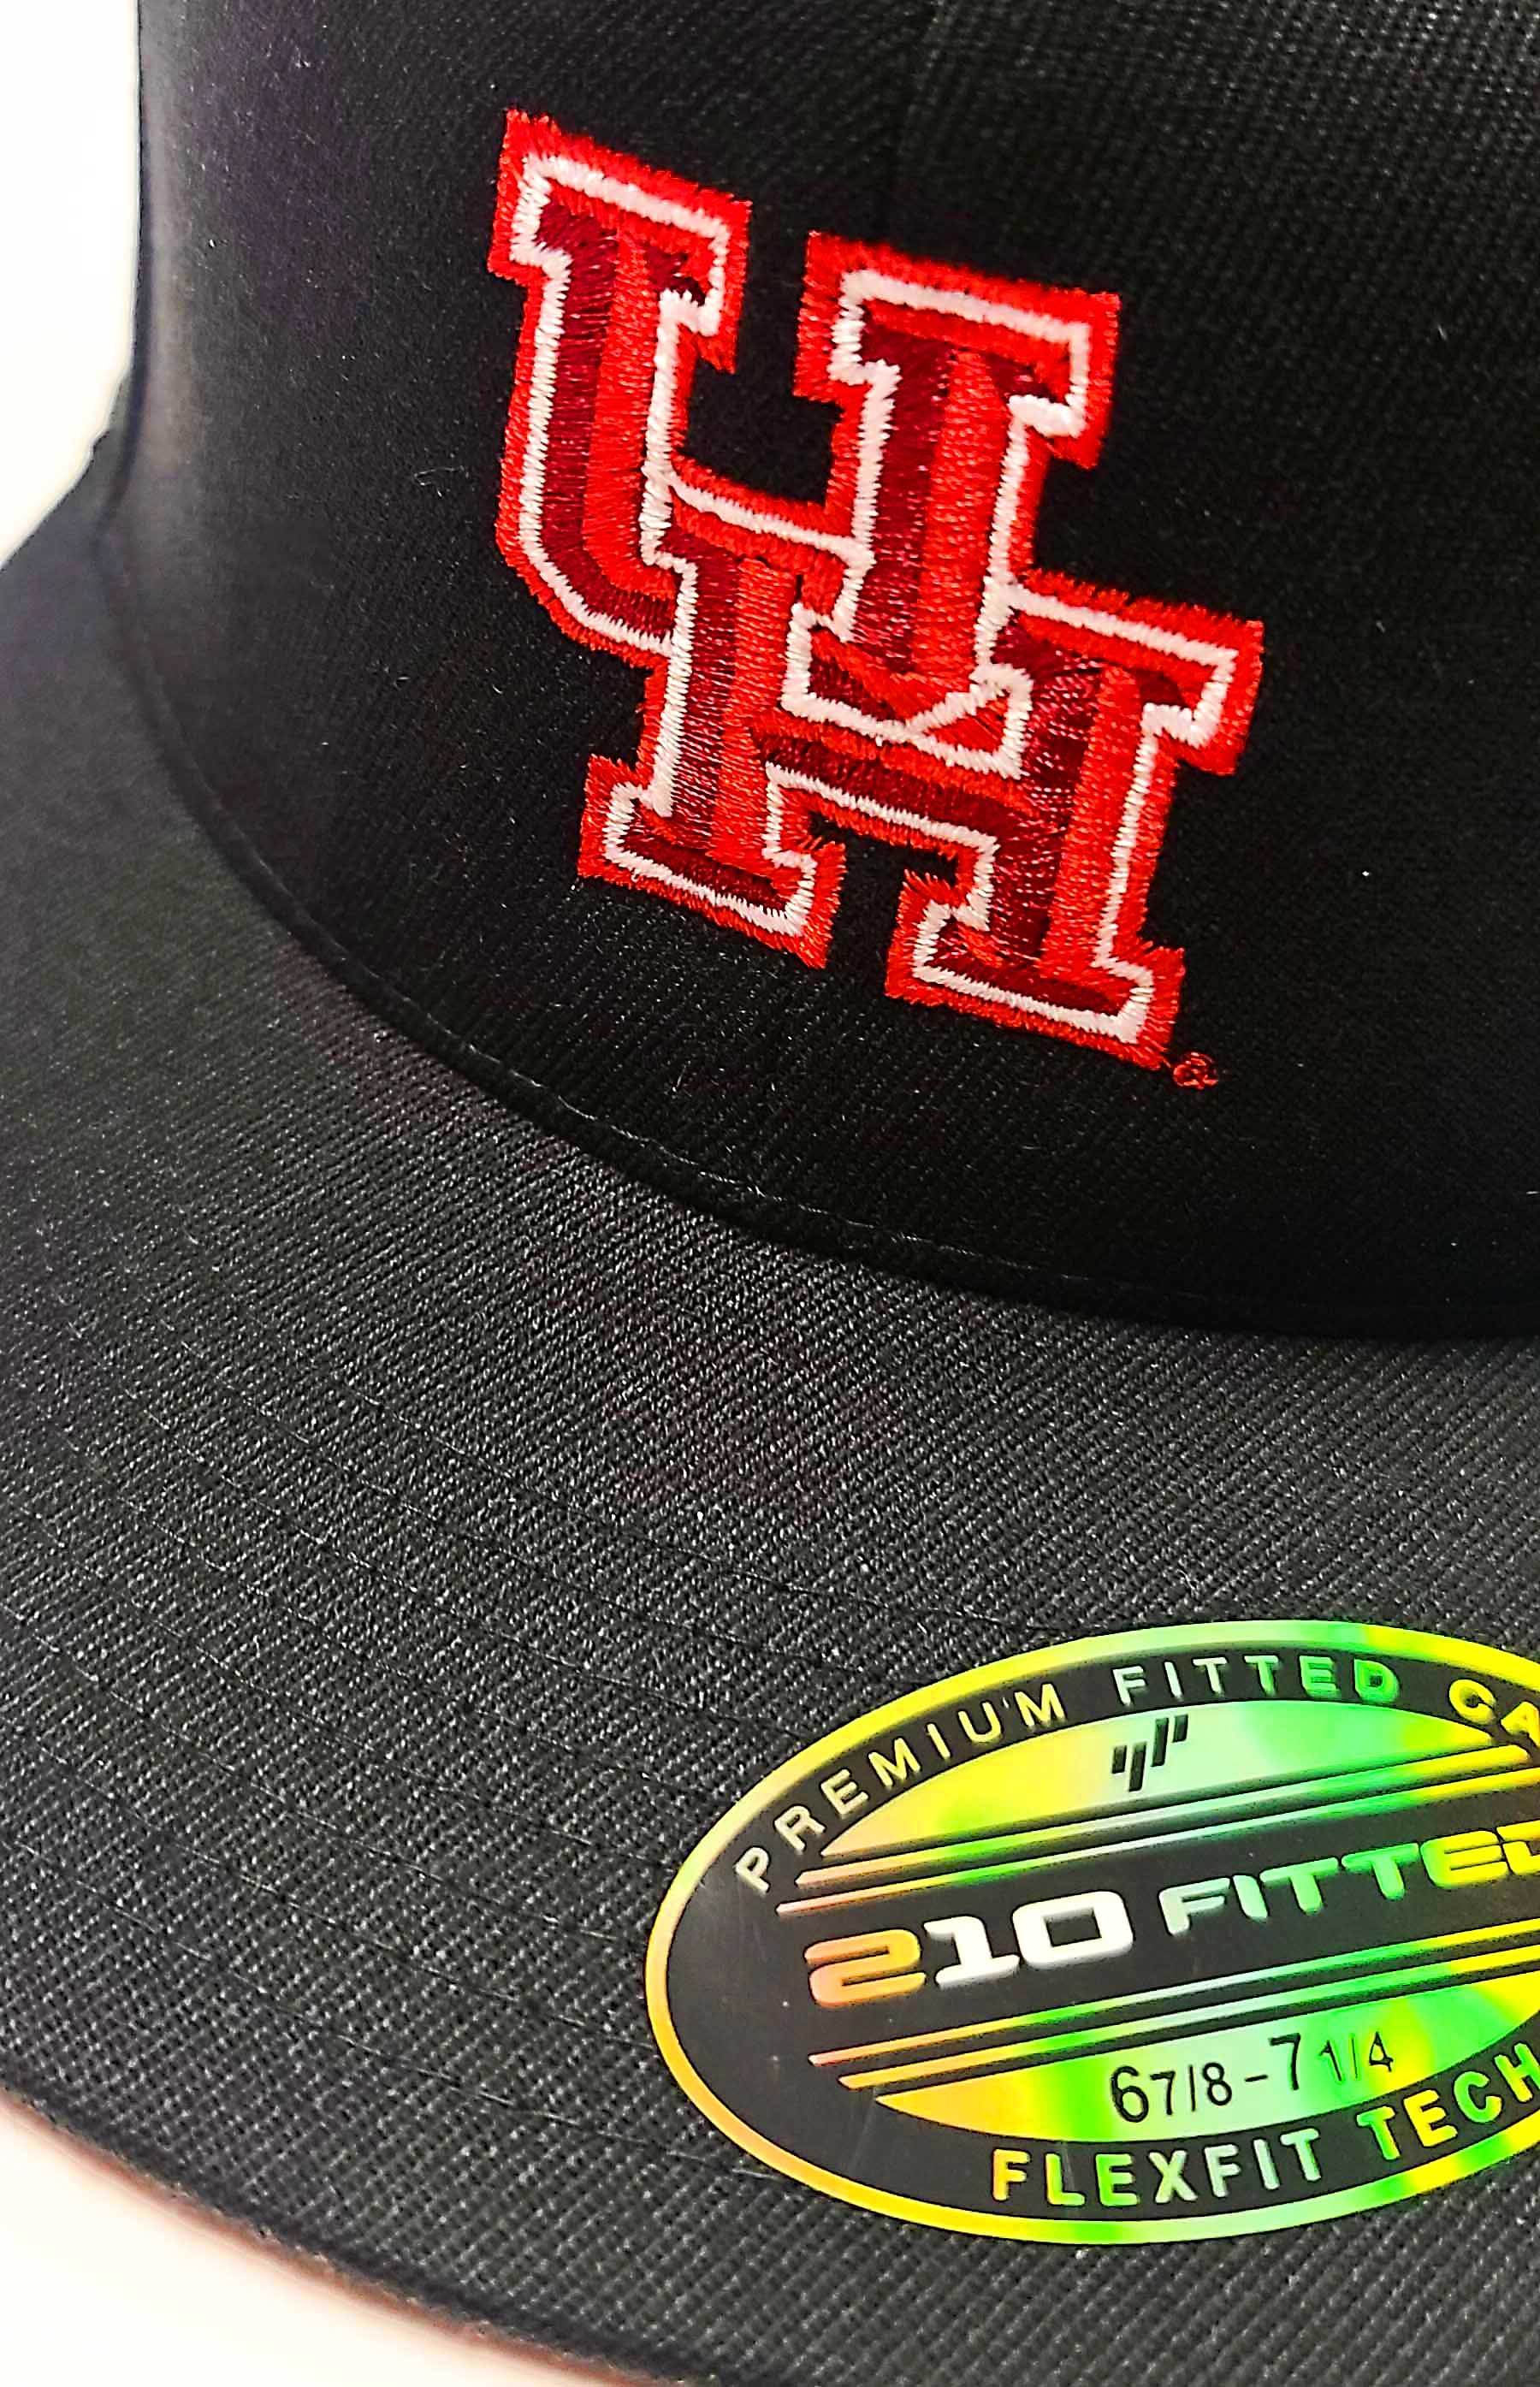 U of H black Semi Fitted Flexfit 6210 cap logo view